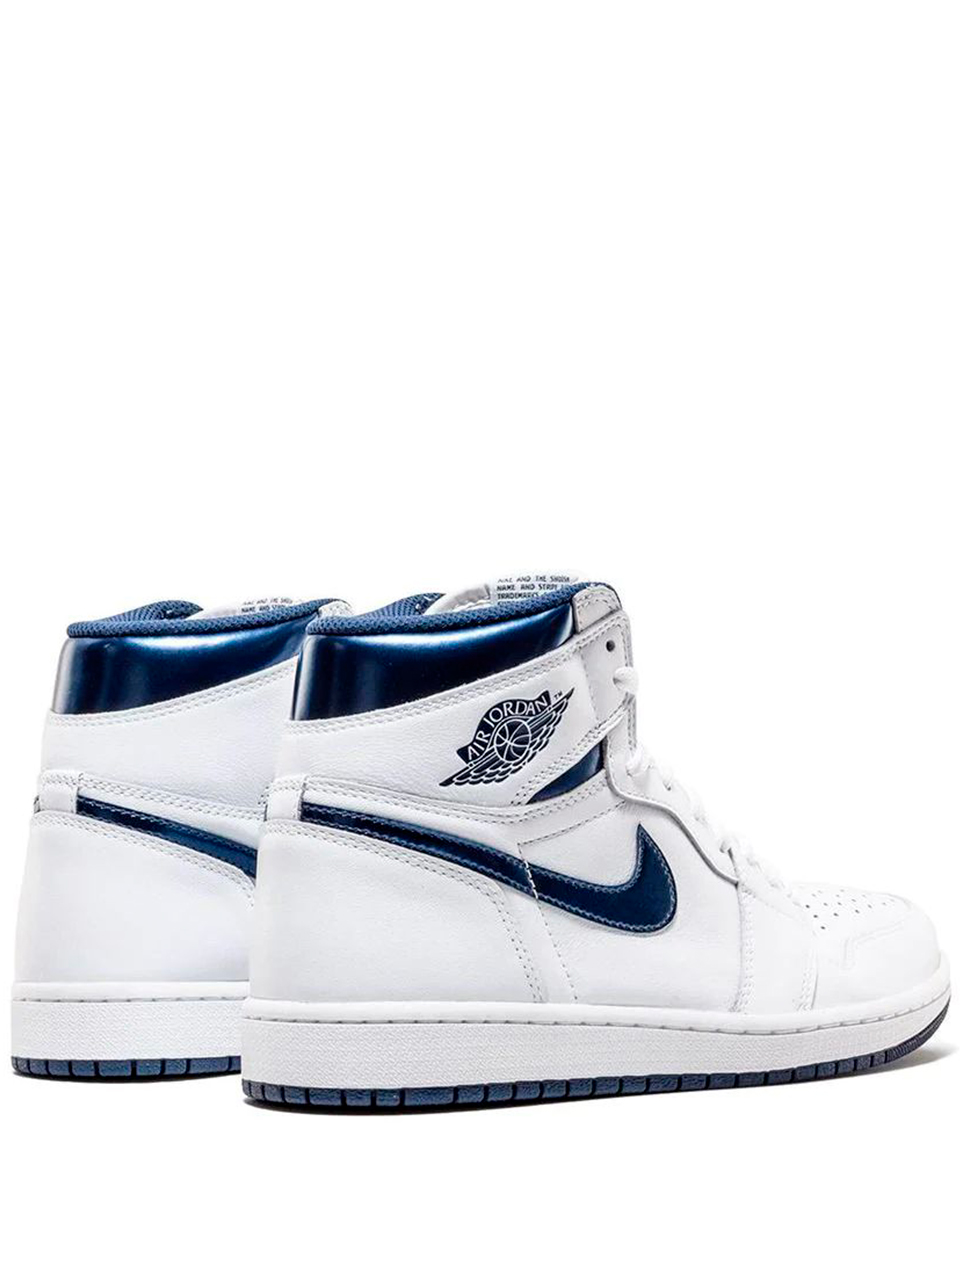 Imagem de: Tênis Nike Air Jordan 1 Retro Branco e Azul